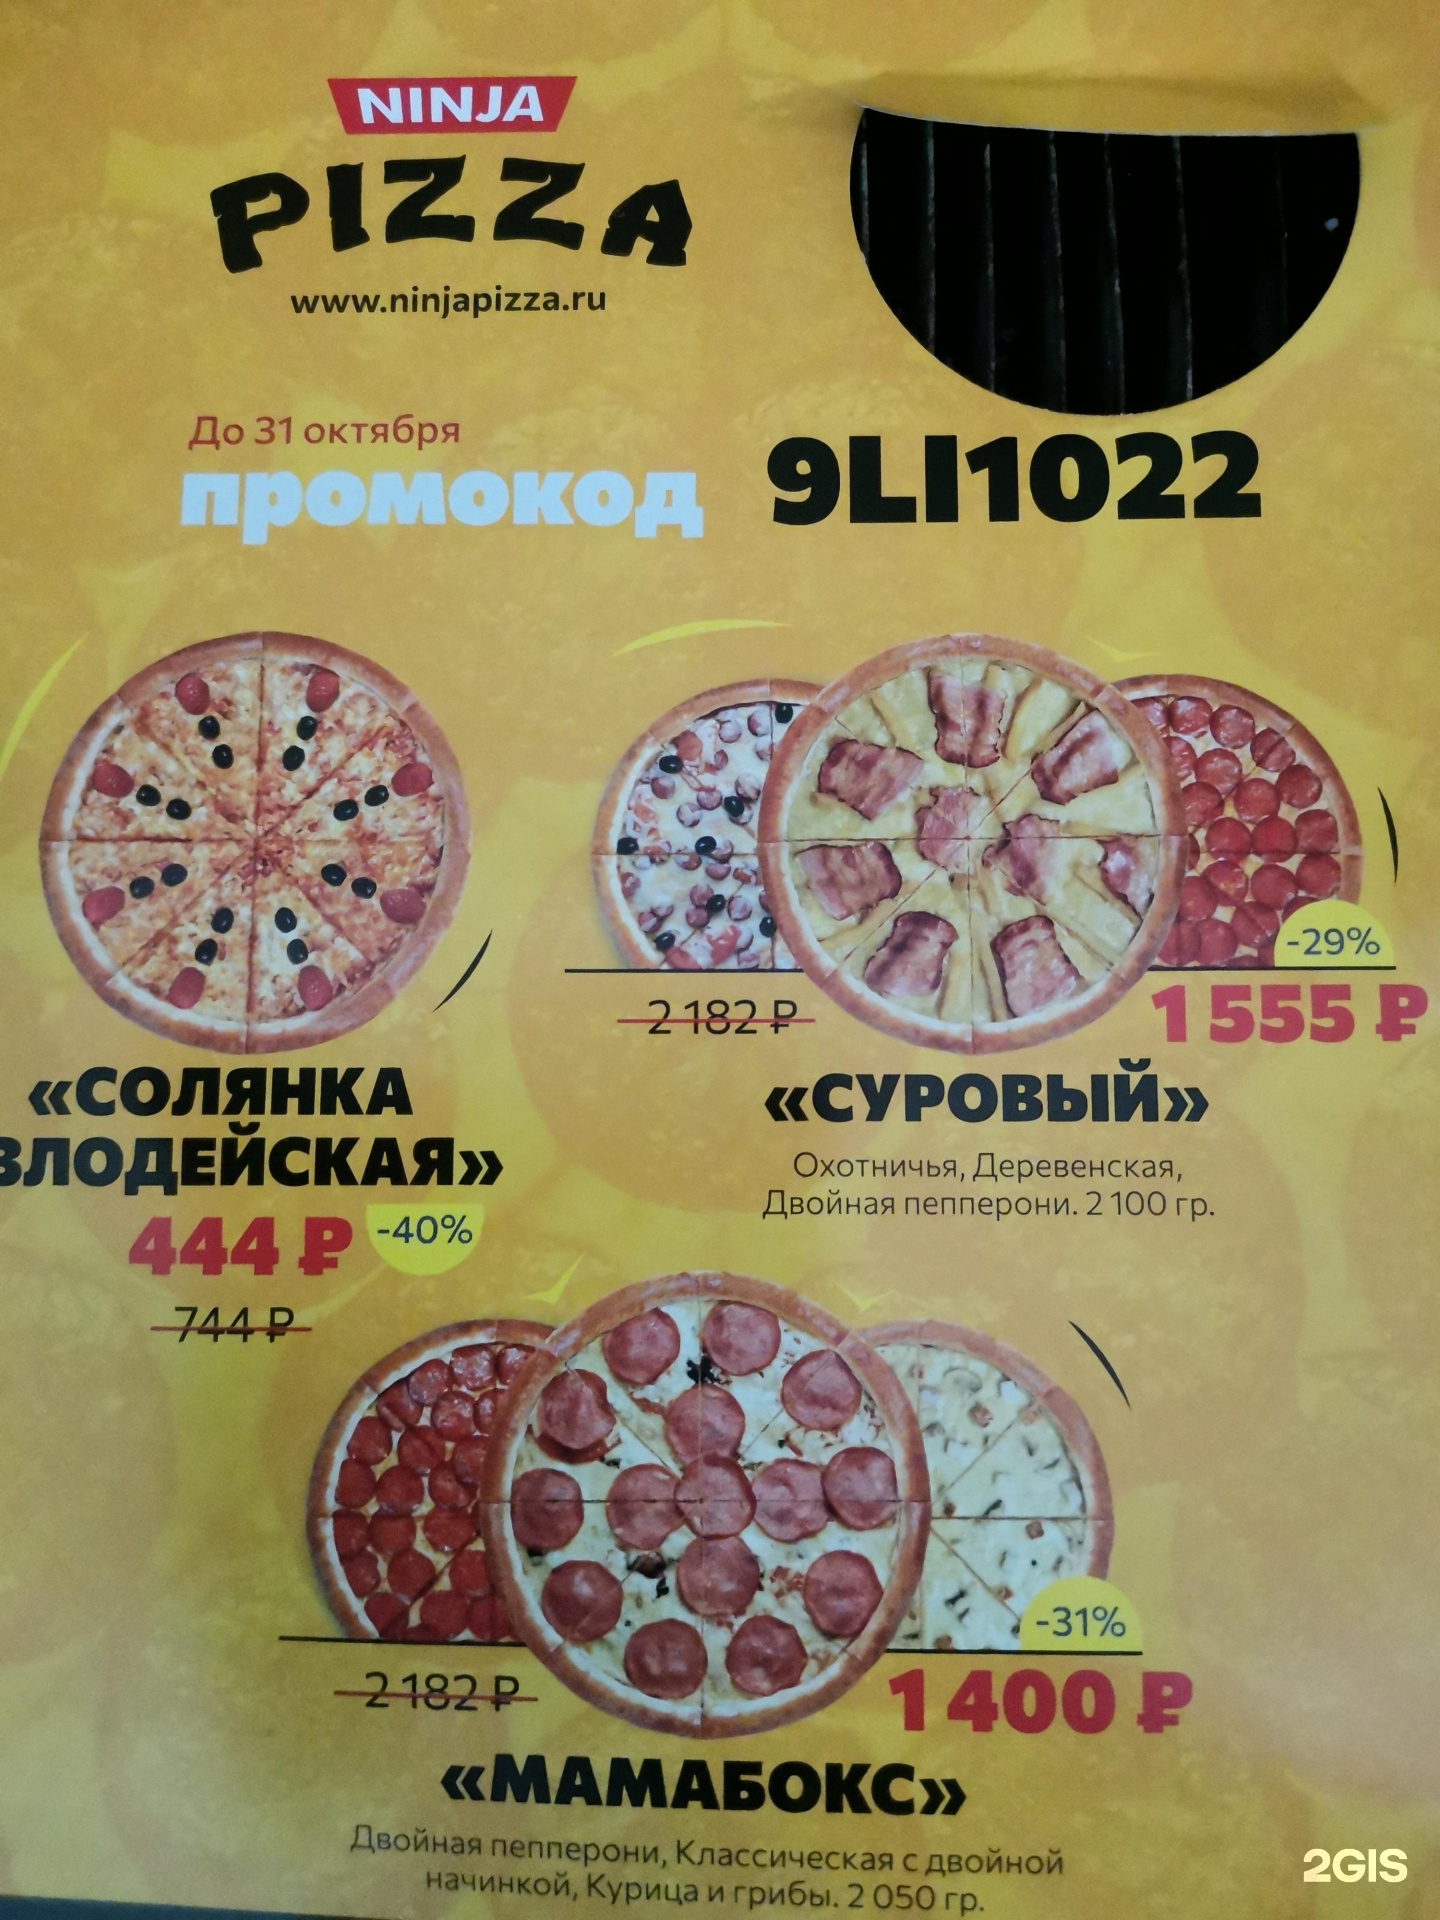 режим работы ниндзя пицца нововятск фото 109